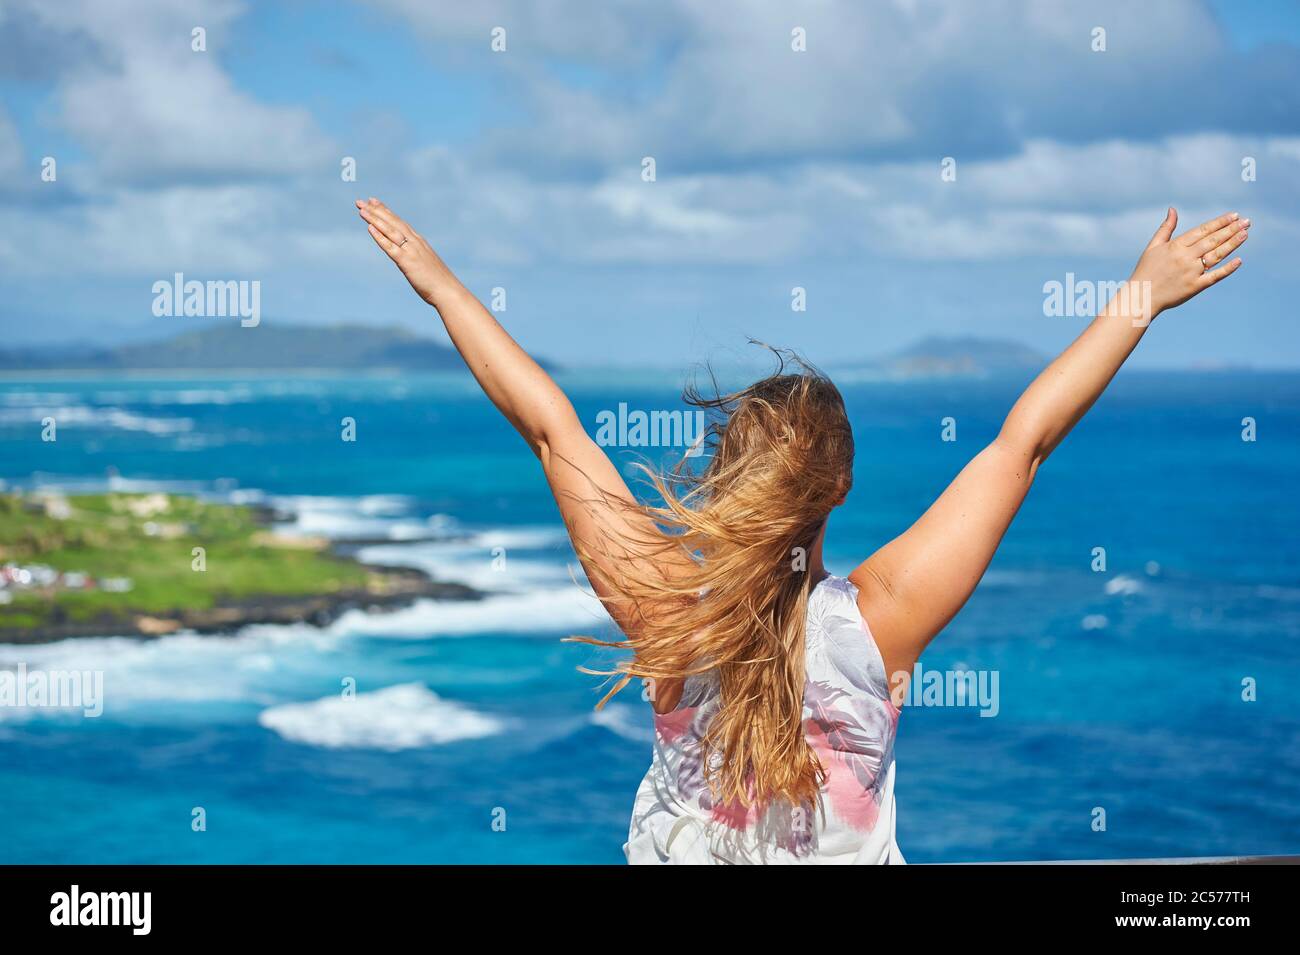 Young woman enjoys the view from Makapu'u Lookout, North Coast, Hawaiian Island of Oahu, Oahu, Hawaii, Aloha State, USA Stock Photo